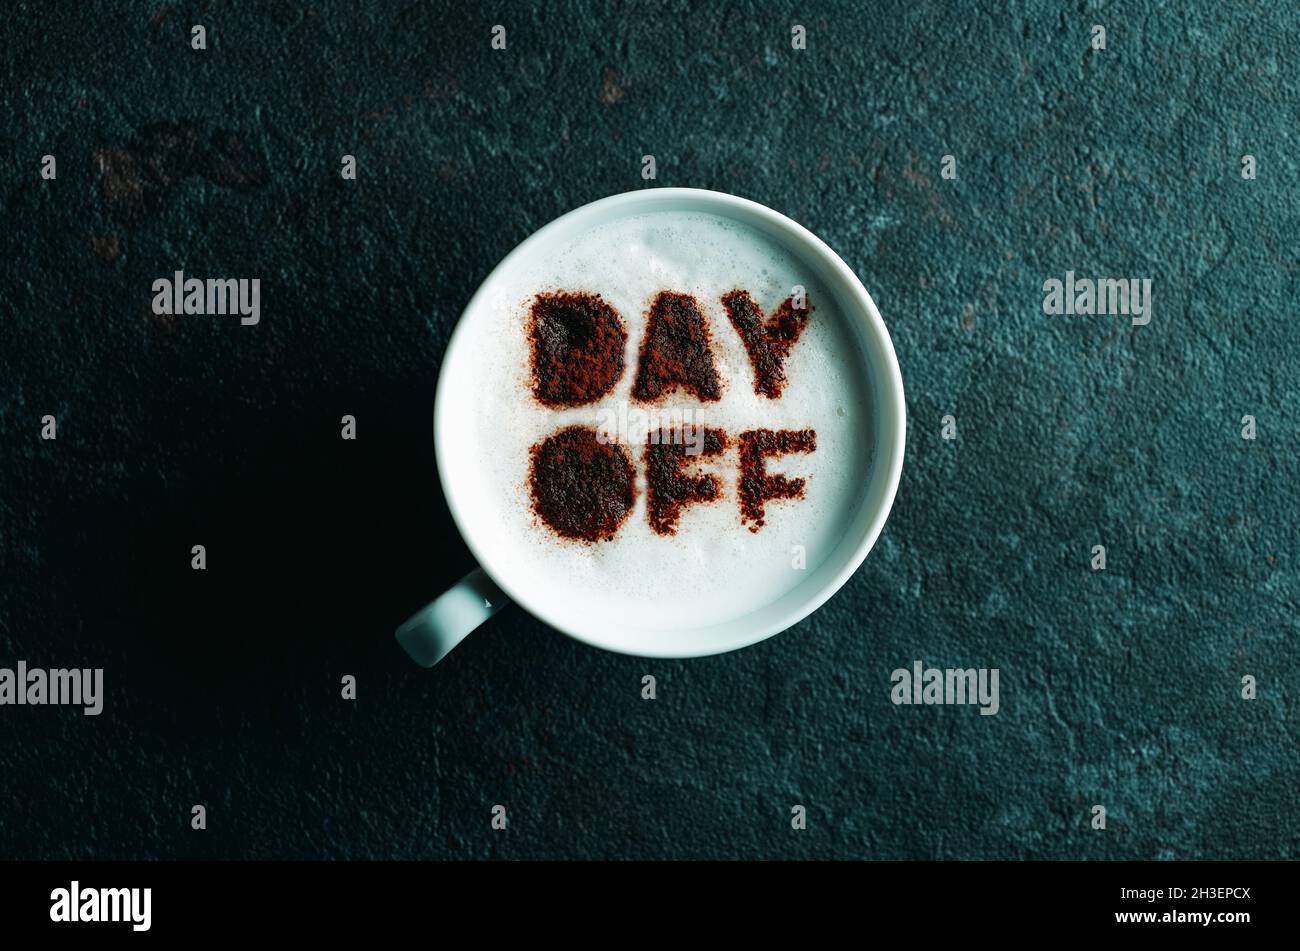 vista en ángulo de una taza de cappuccino con el texto del día libre escrito con cacao en polvo en su espuma de leche Foto de stock